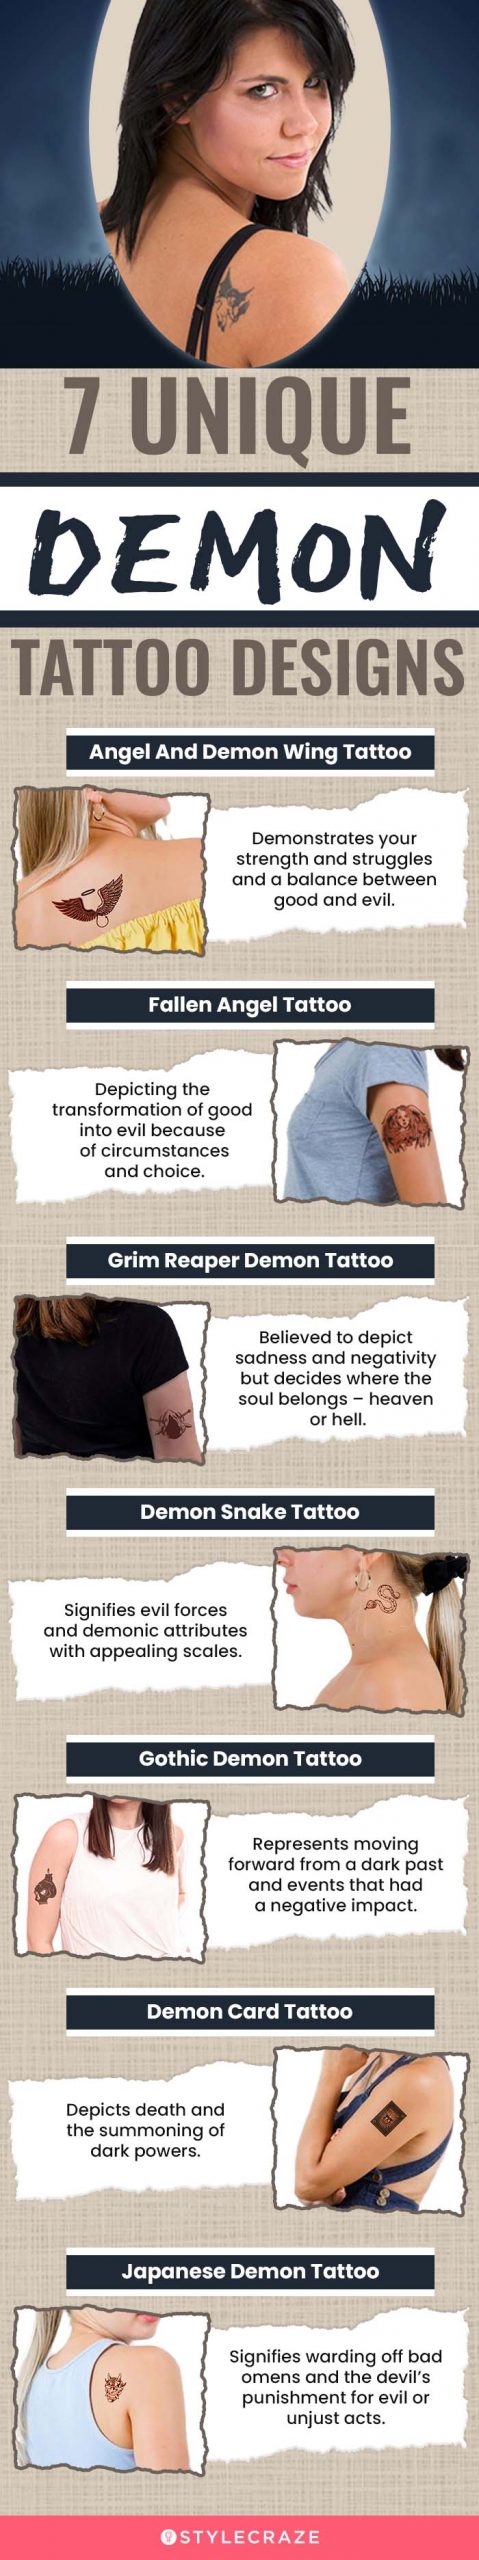 7 unique demon tattoo designs [infographic]